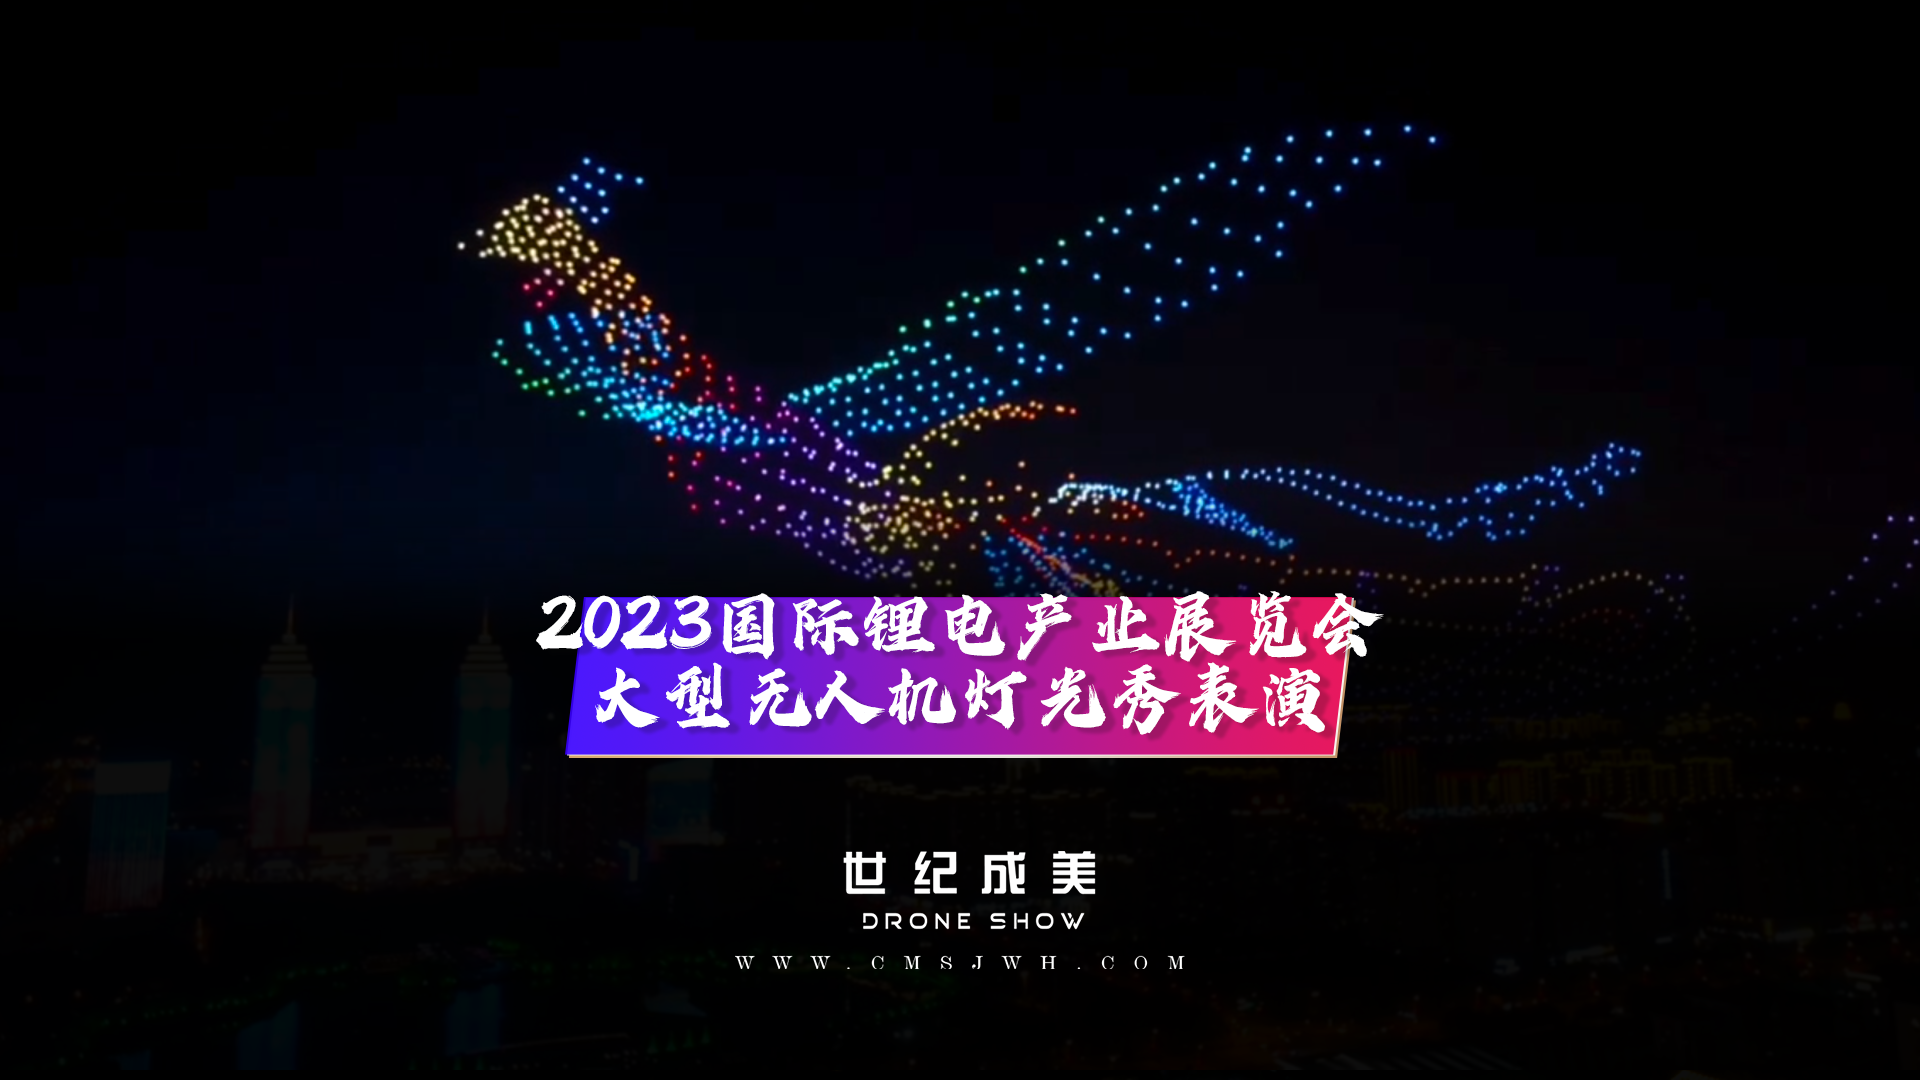 2023枣庄国际锂电产业展览会 大型无人机灯光秀表演，点亮枣庄夜空。